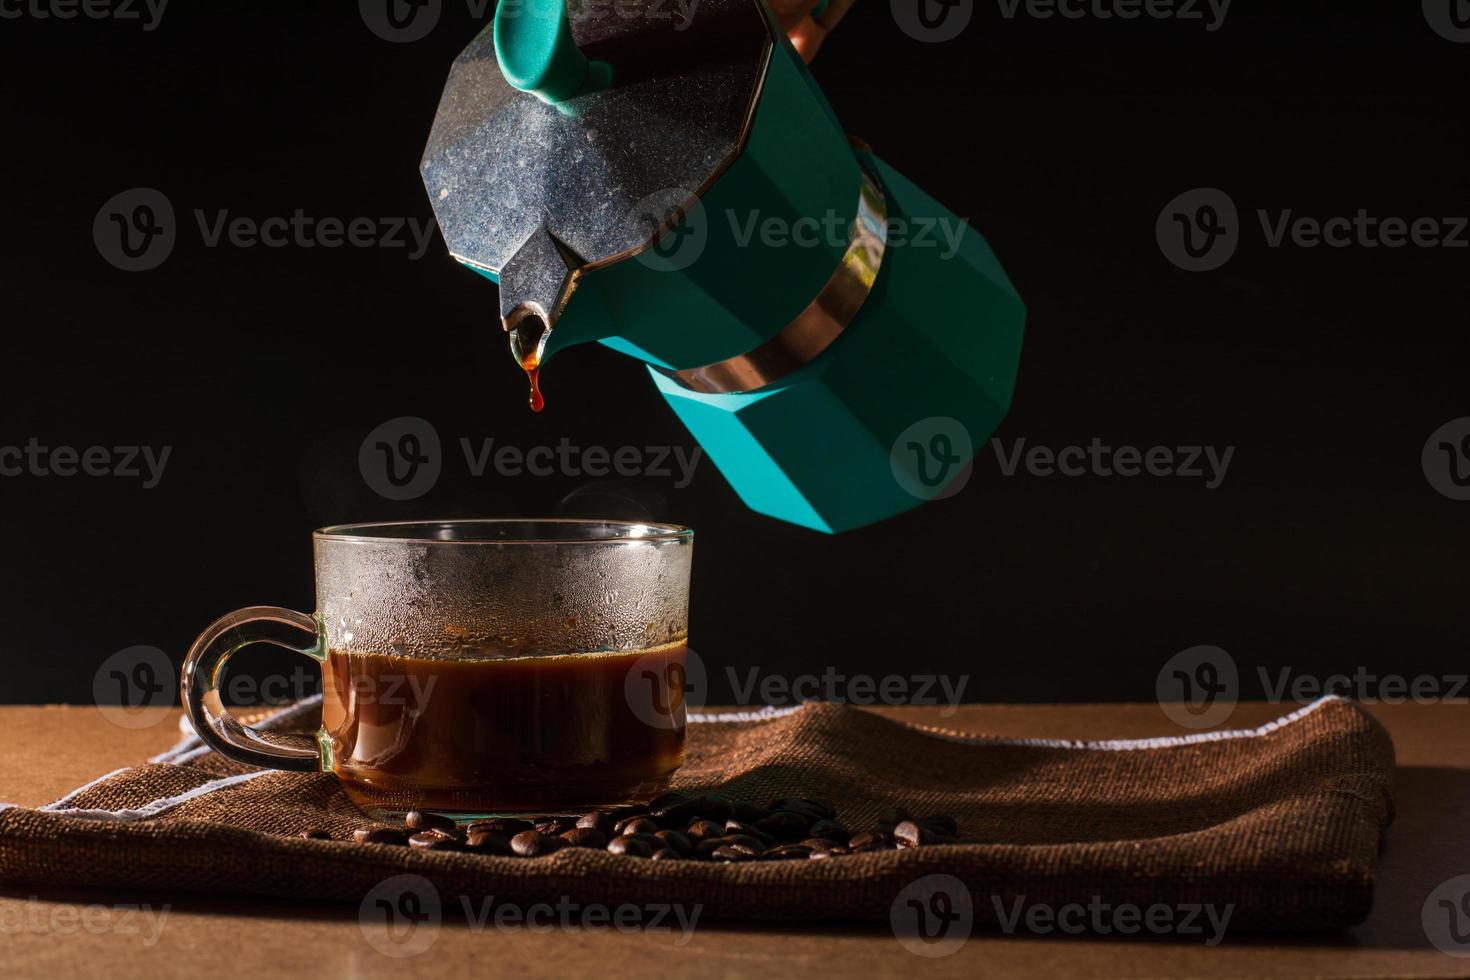 versare il caffè nero caldo dalla moka verde per pulire la tazza di caffè con fumo e chicchi di caffè su una tovaglia marrone e un tavolo di legno. beneficio del concetto di caffè. foto